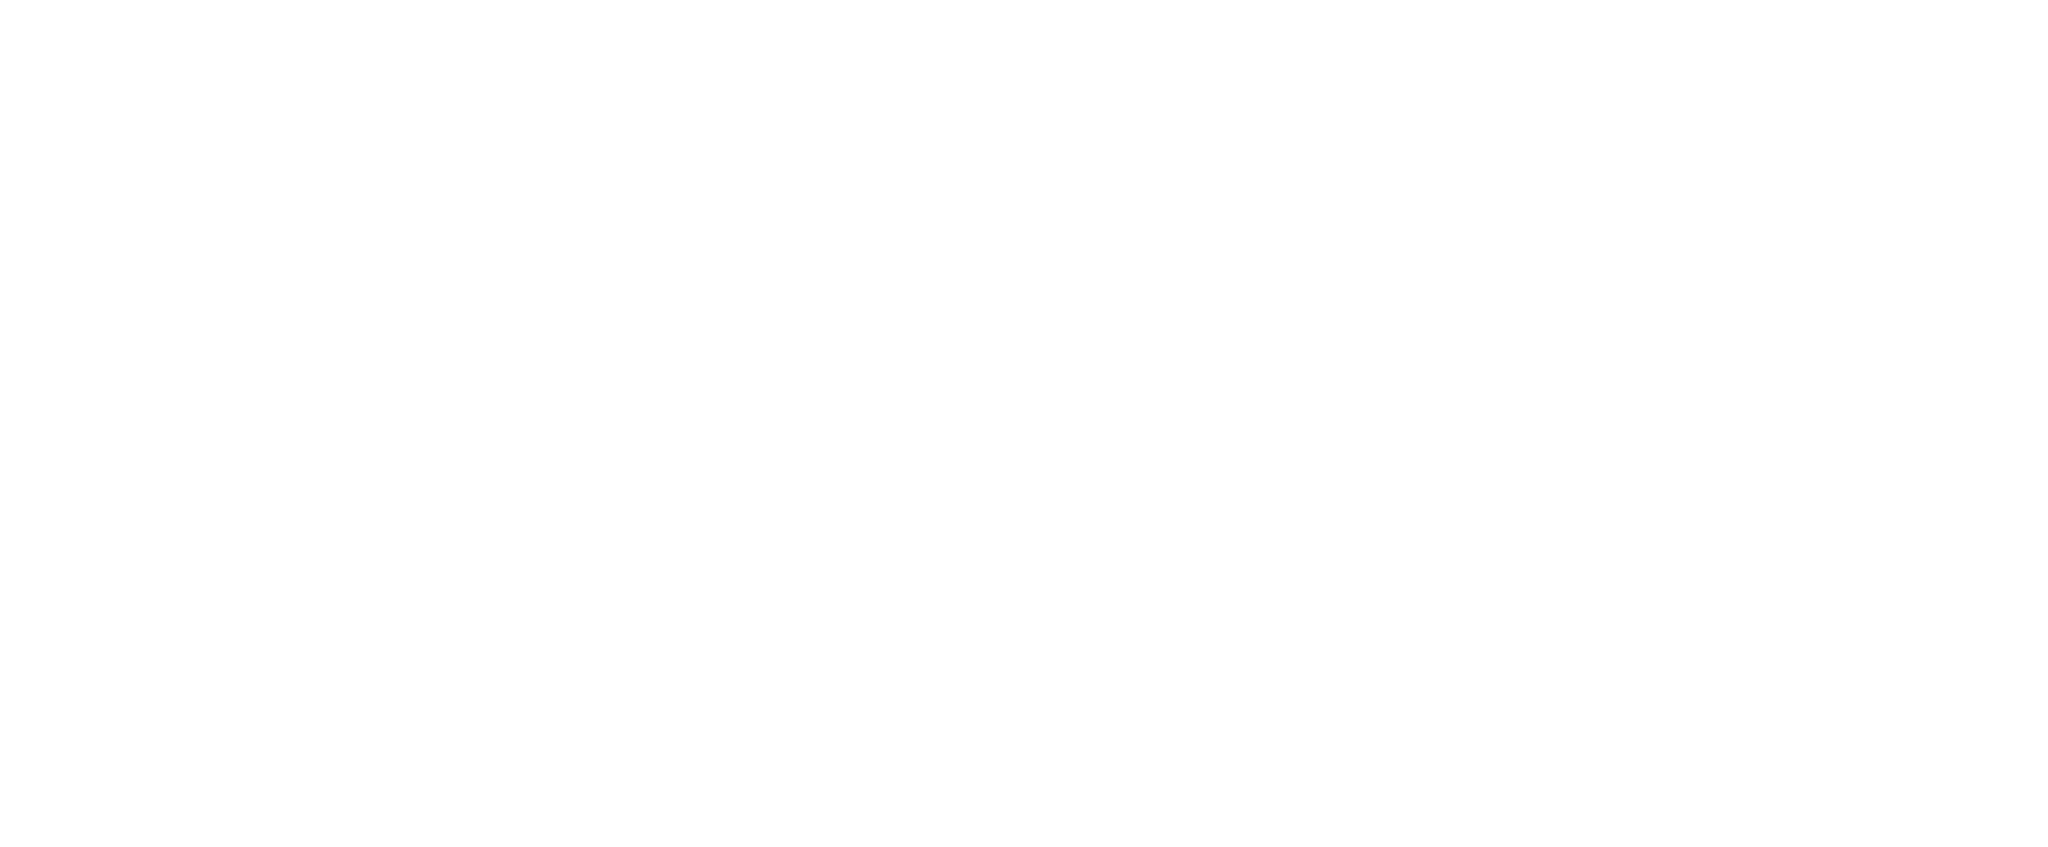 Código de Cupom União Skate Shop 